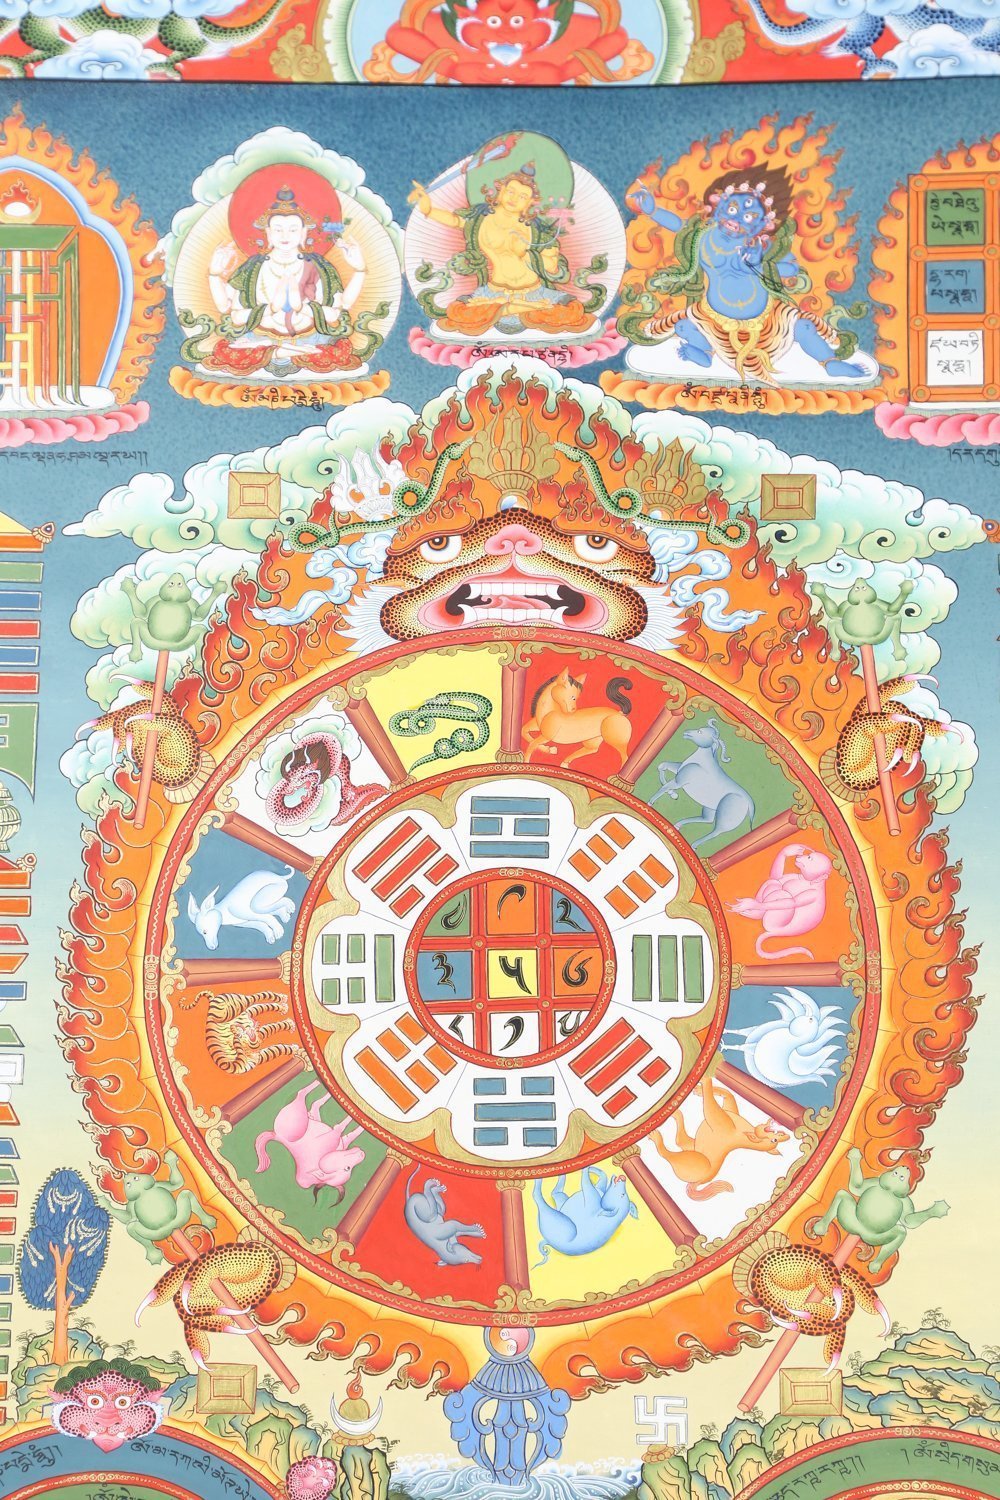 traditional-tibetan-calendar-thangka-thedharmashop